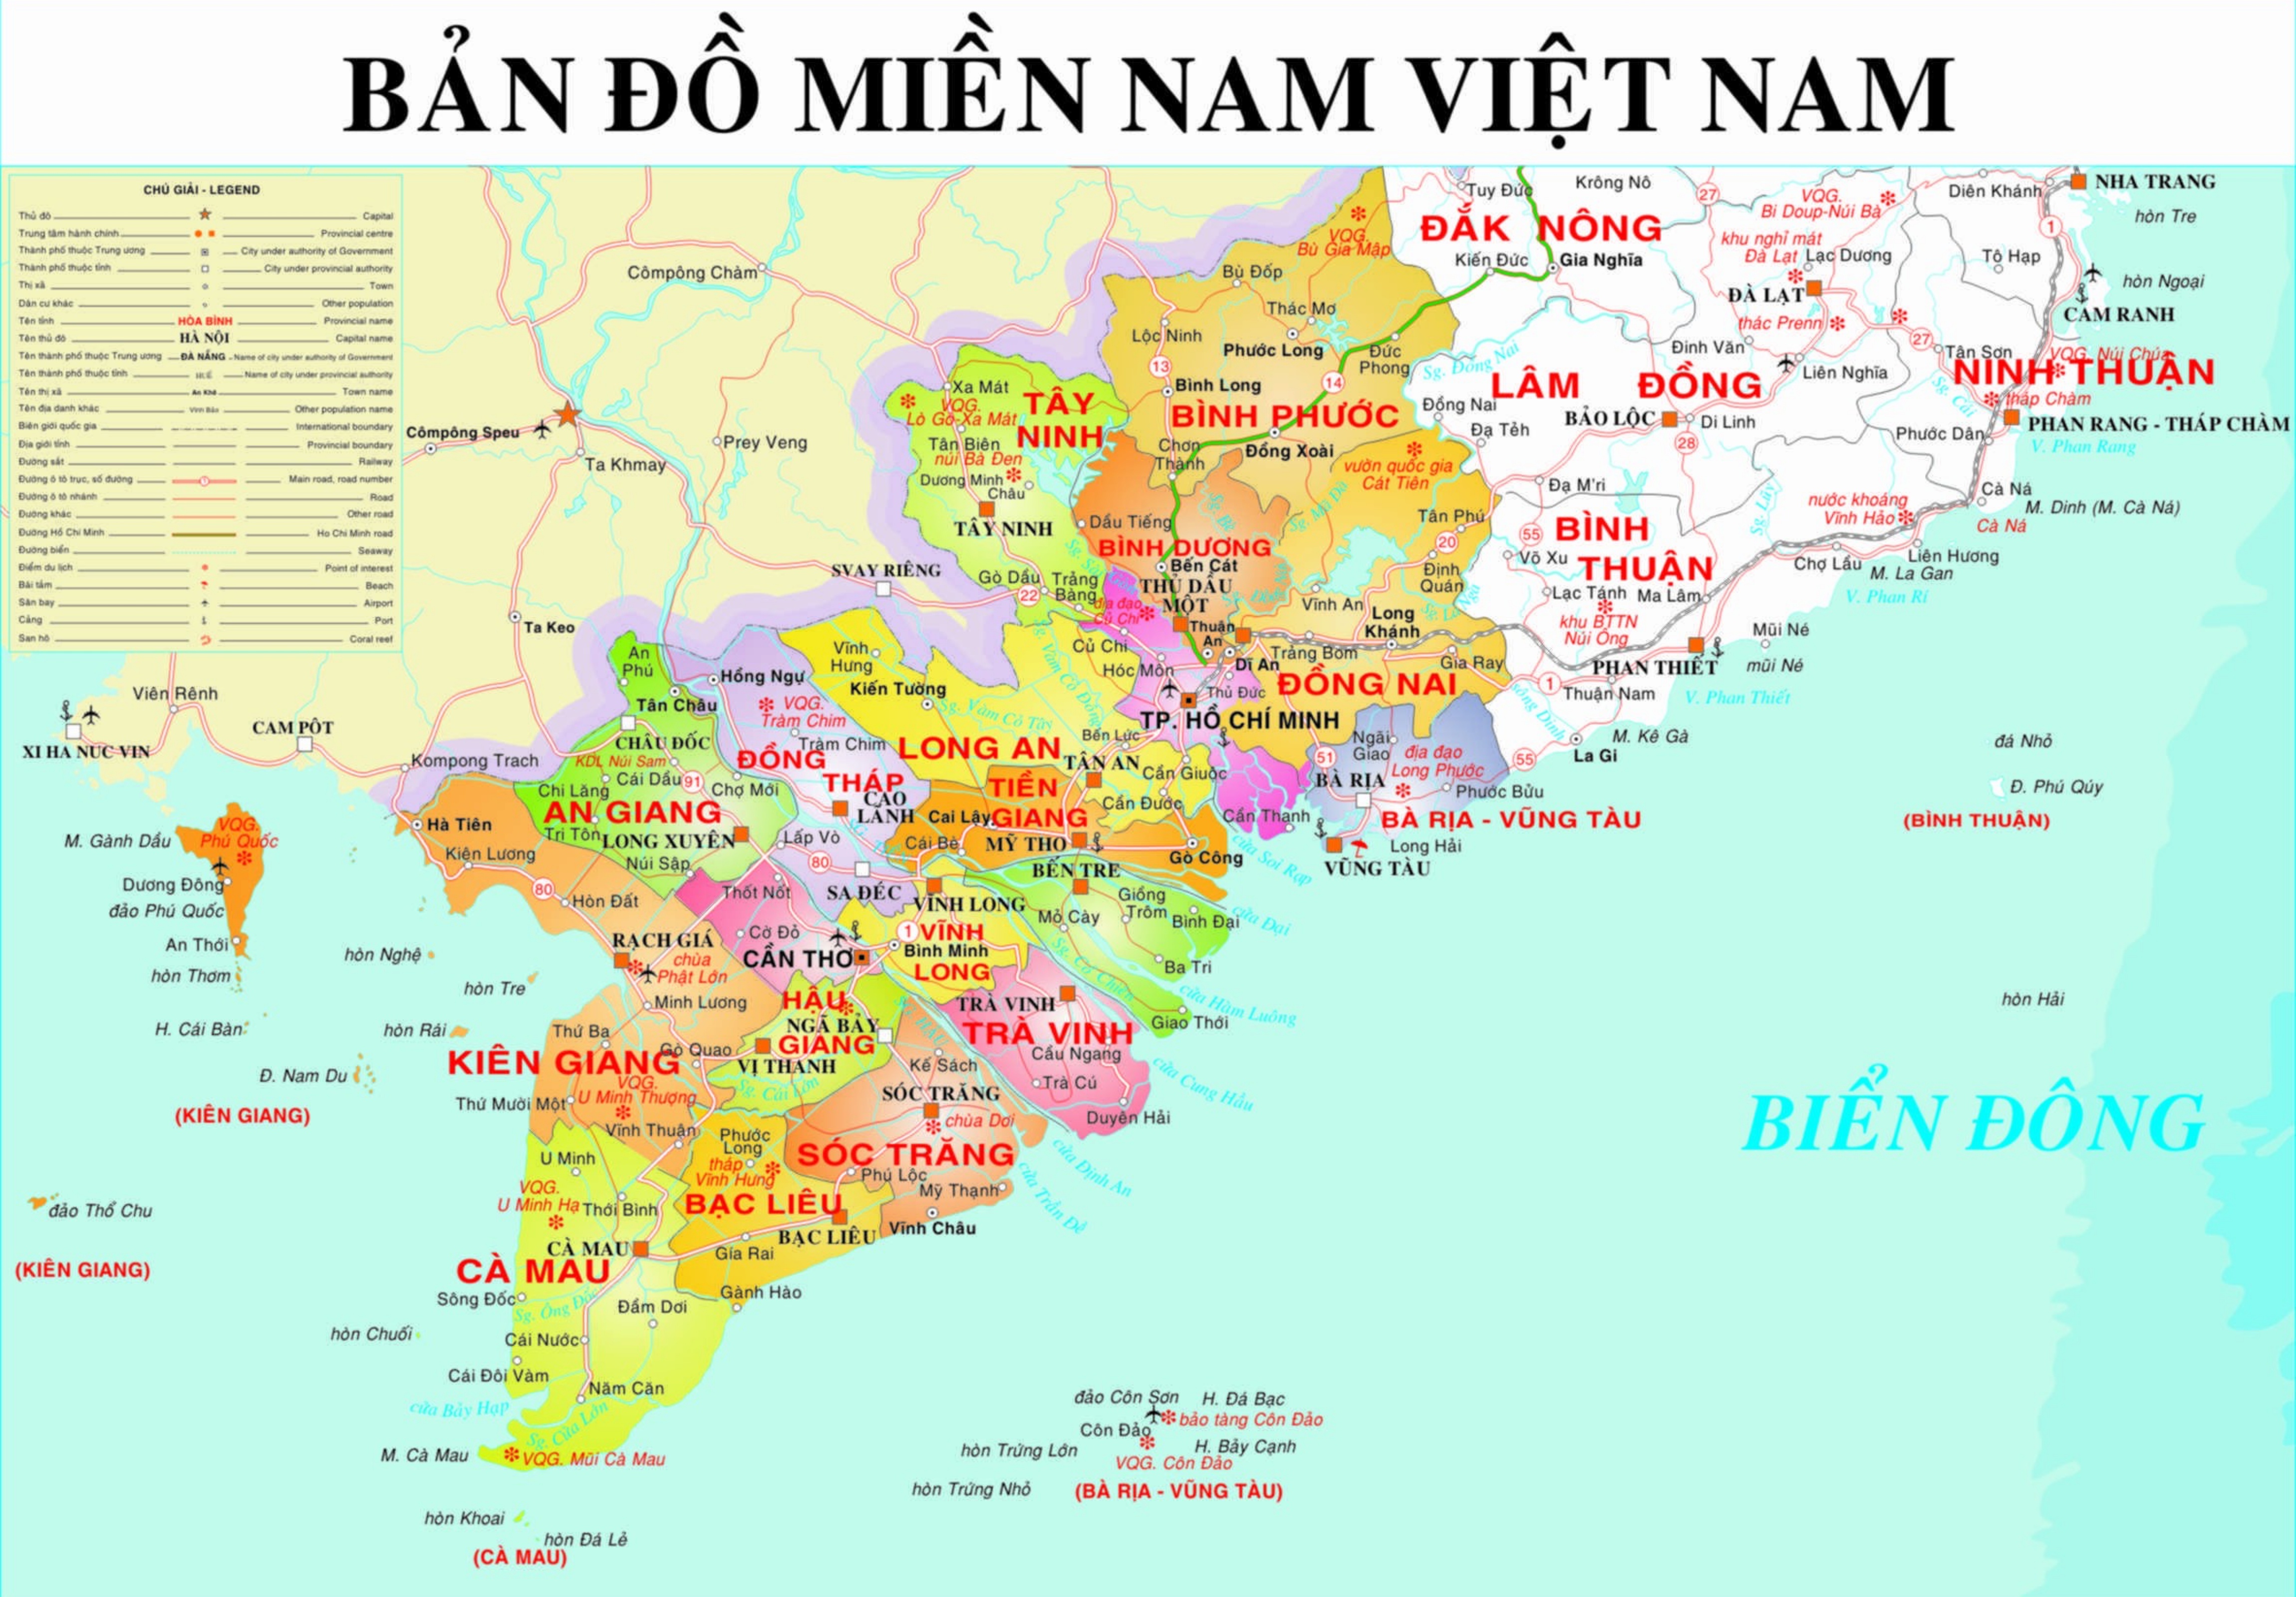 Biên tập bản đồ phía nam Việt Nam đang được nâng cao chất lượng với sự hỗ trợ của các công nghệ tiên tiến như Google Maps và GPS. Những bản đồ được sản xuất sẽ cung cấp thông tin chi tiết về địa hình, tuyến đường và các địa điểm quan trọng, giúp người dân và khách du lịch dễ dàng di chuyển và khám phá vẻ đẹp của miền Nam.